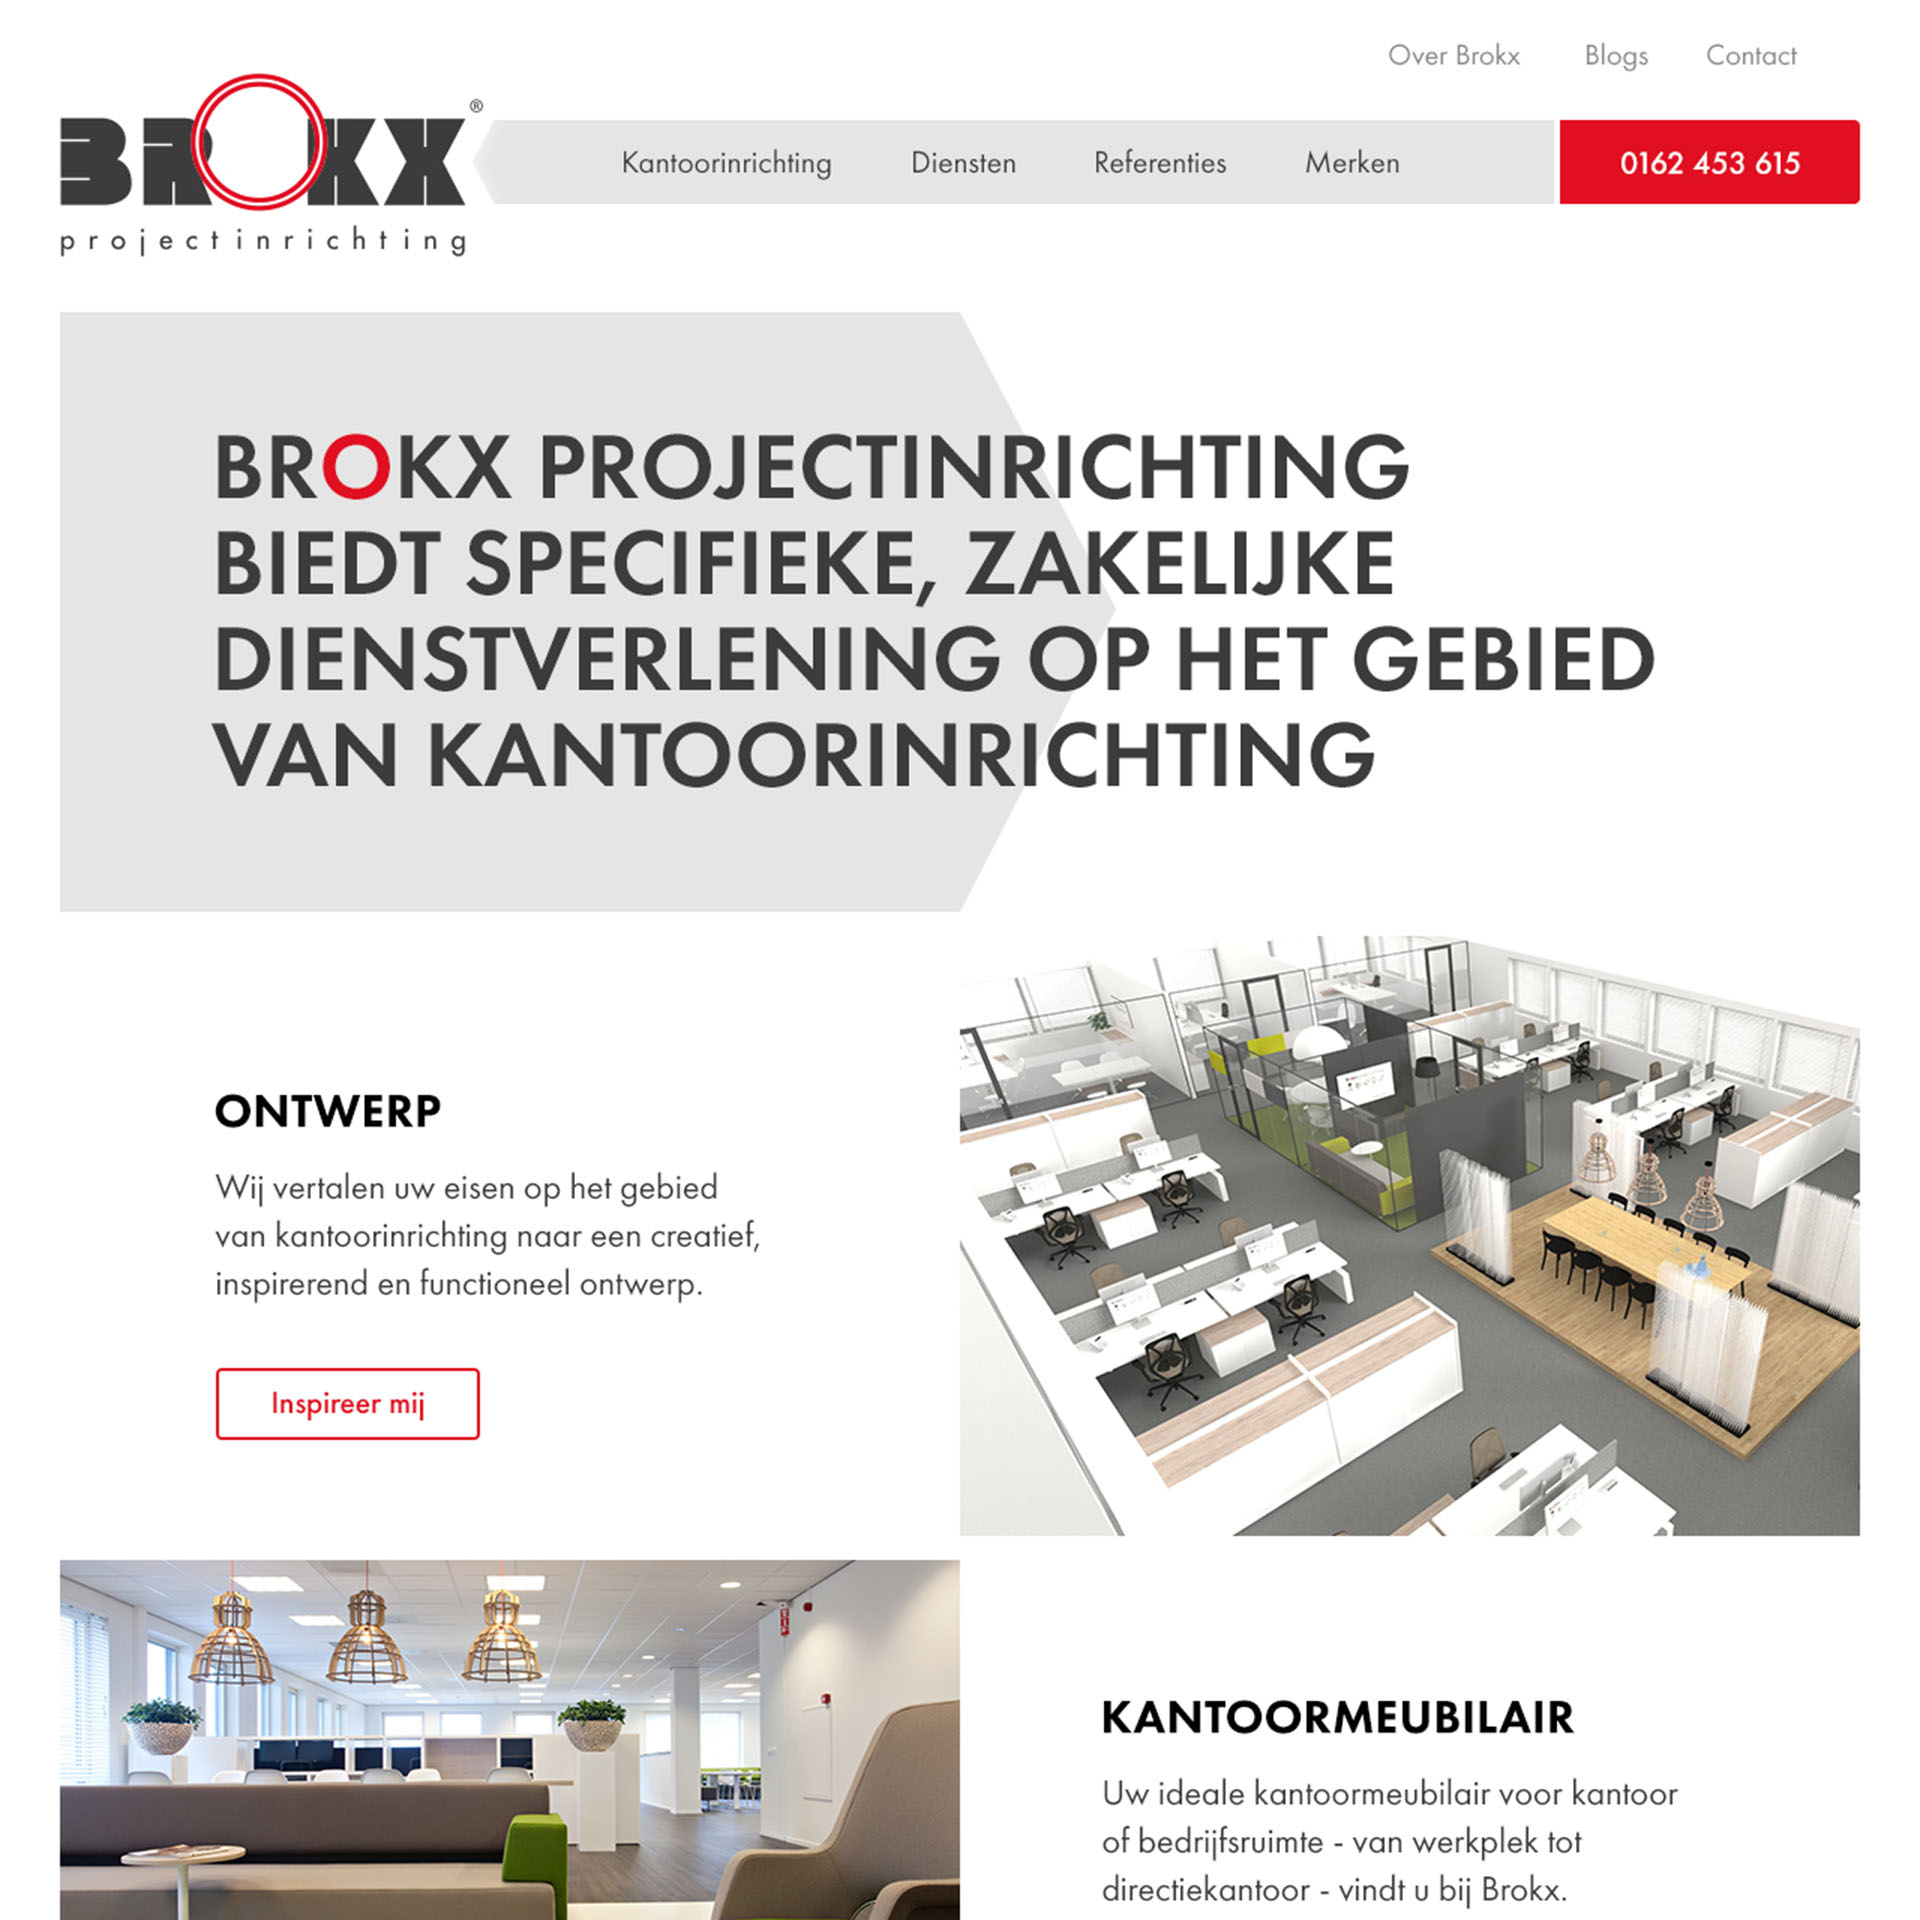 Brokx Projectinrichting